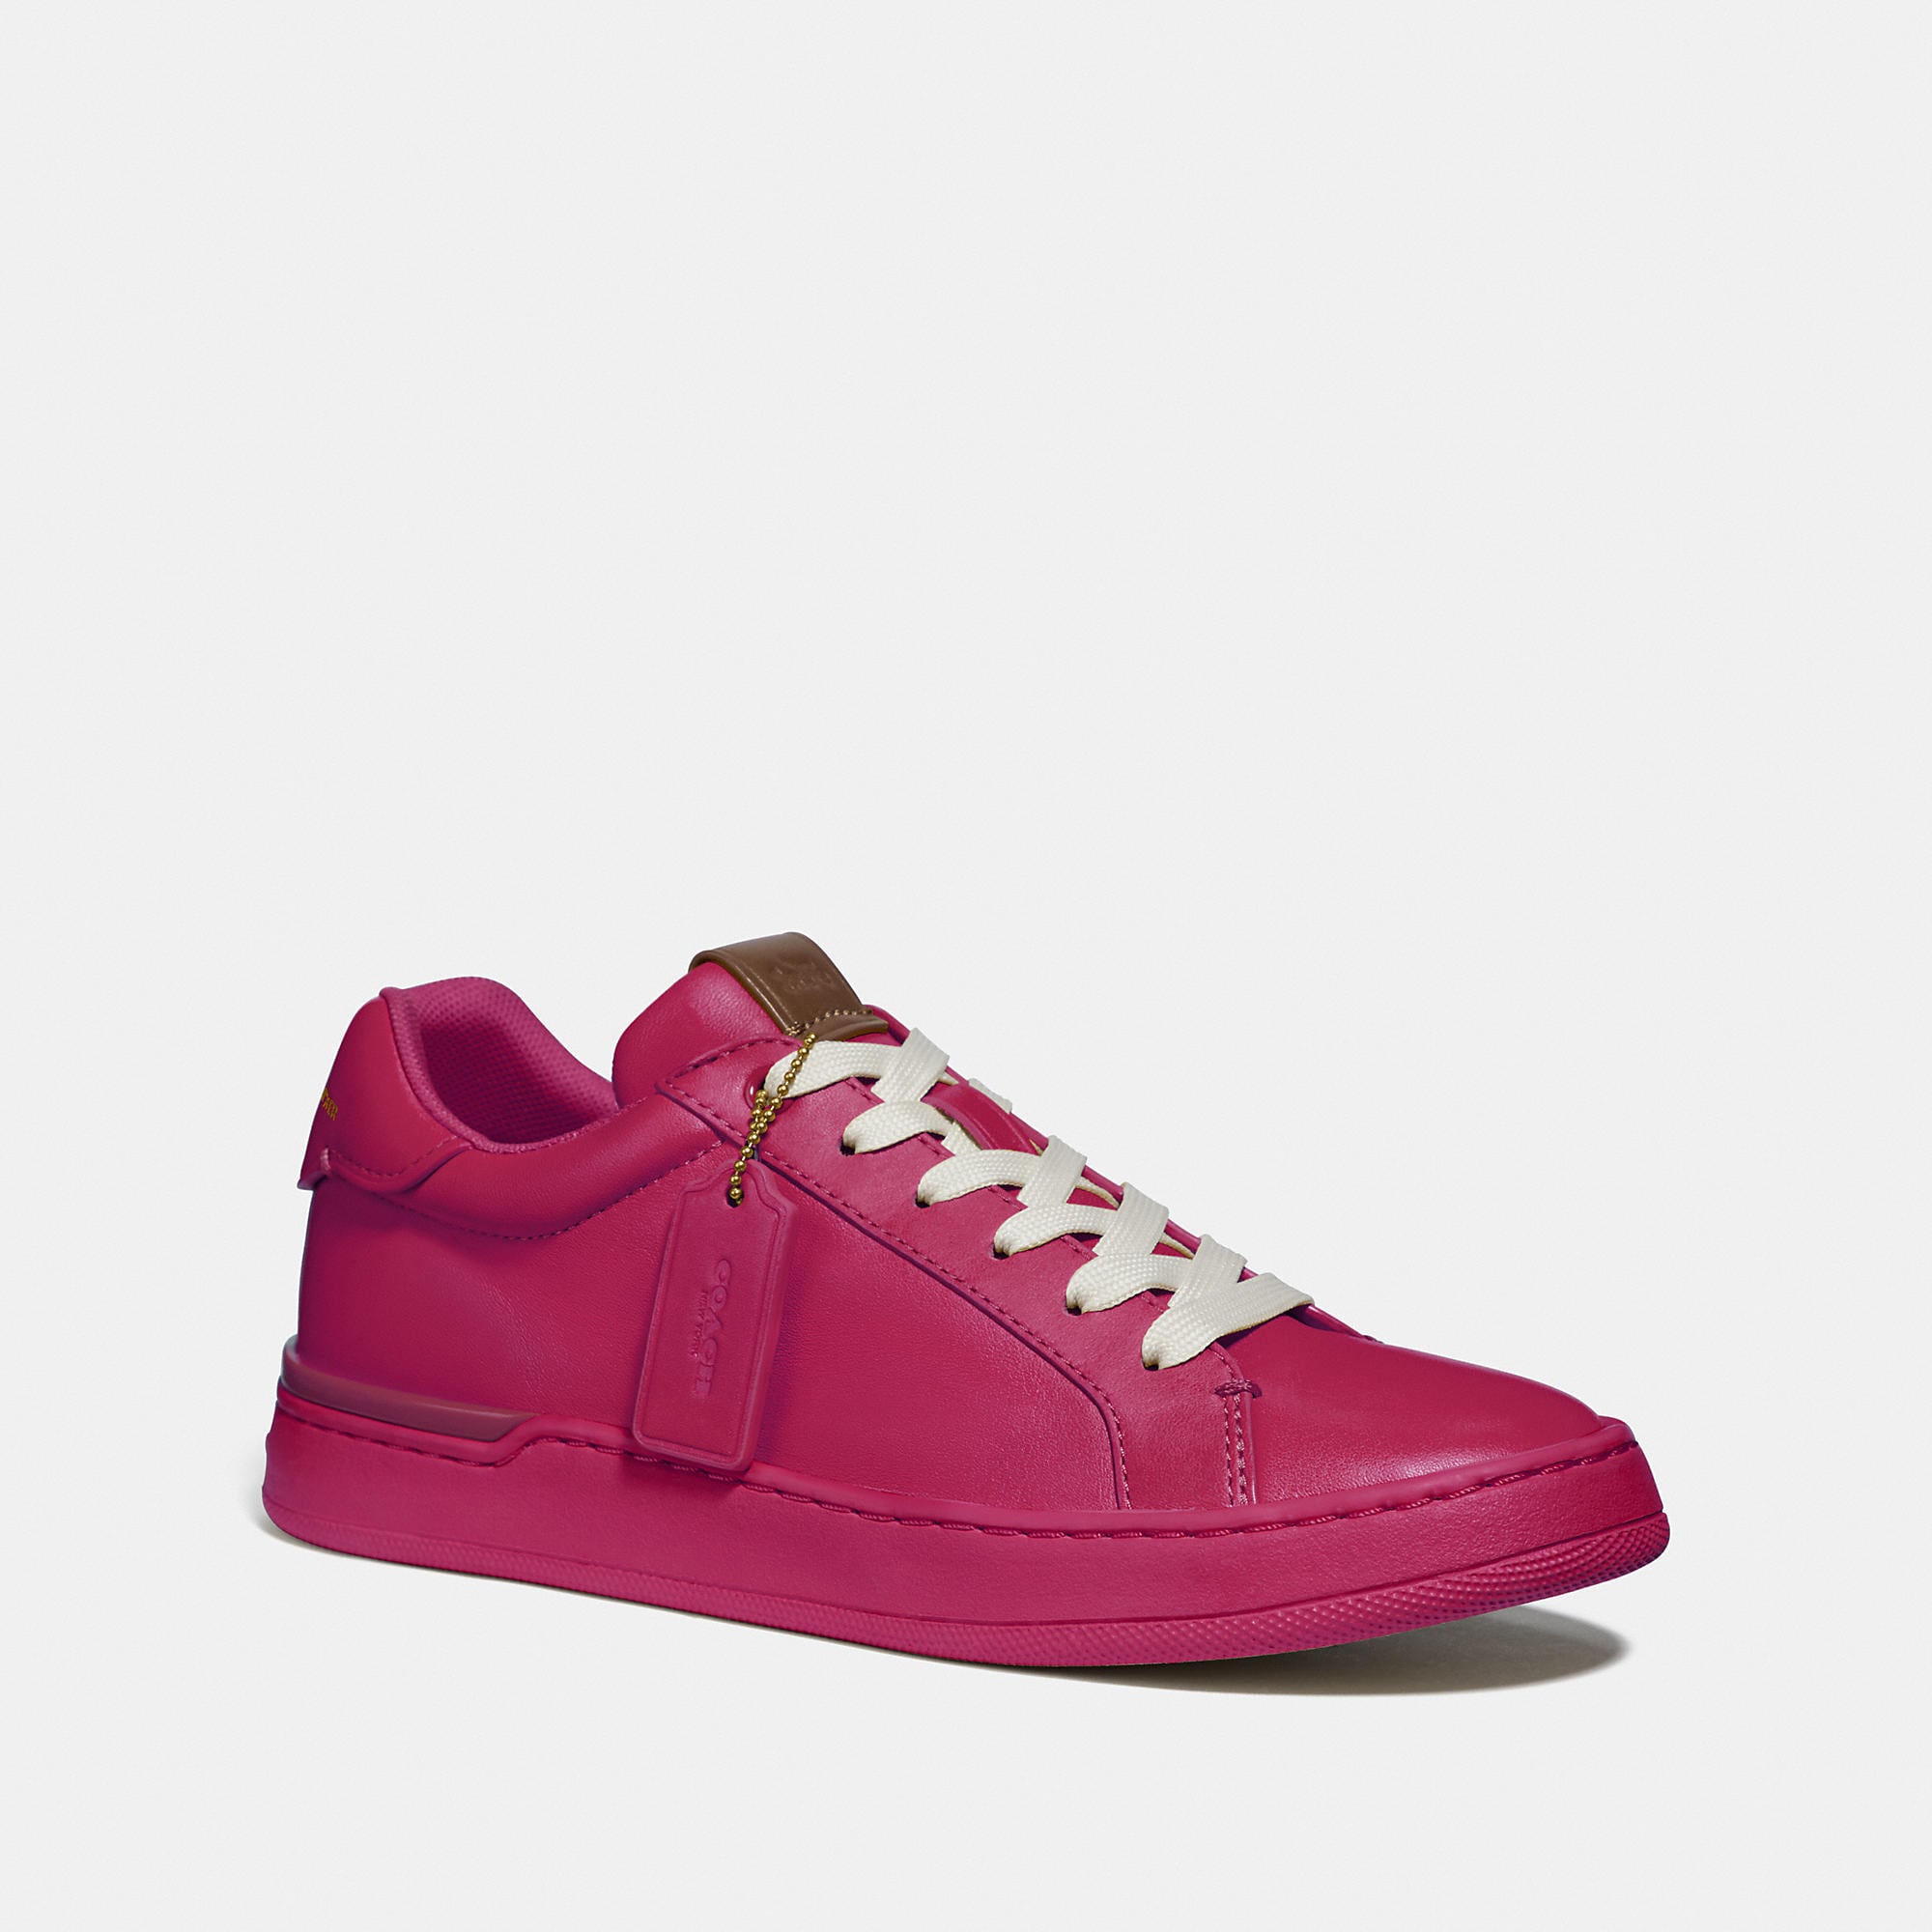 Coach Lowline Luxe Low Top Sneaker In Pink - Size 7.5 B